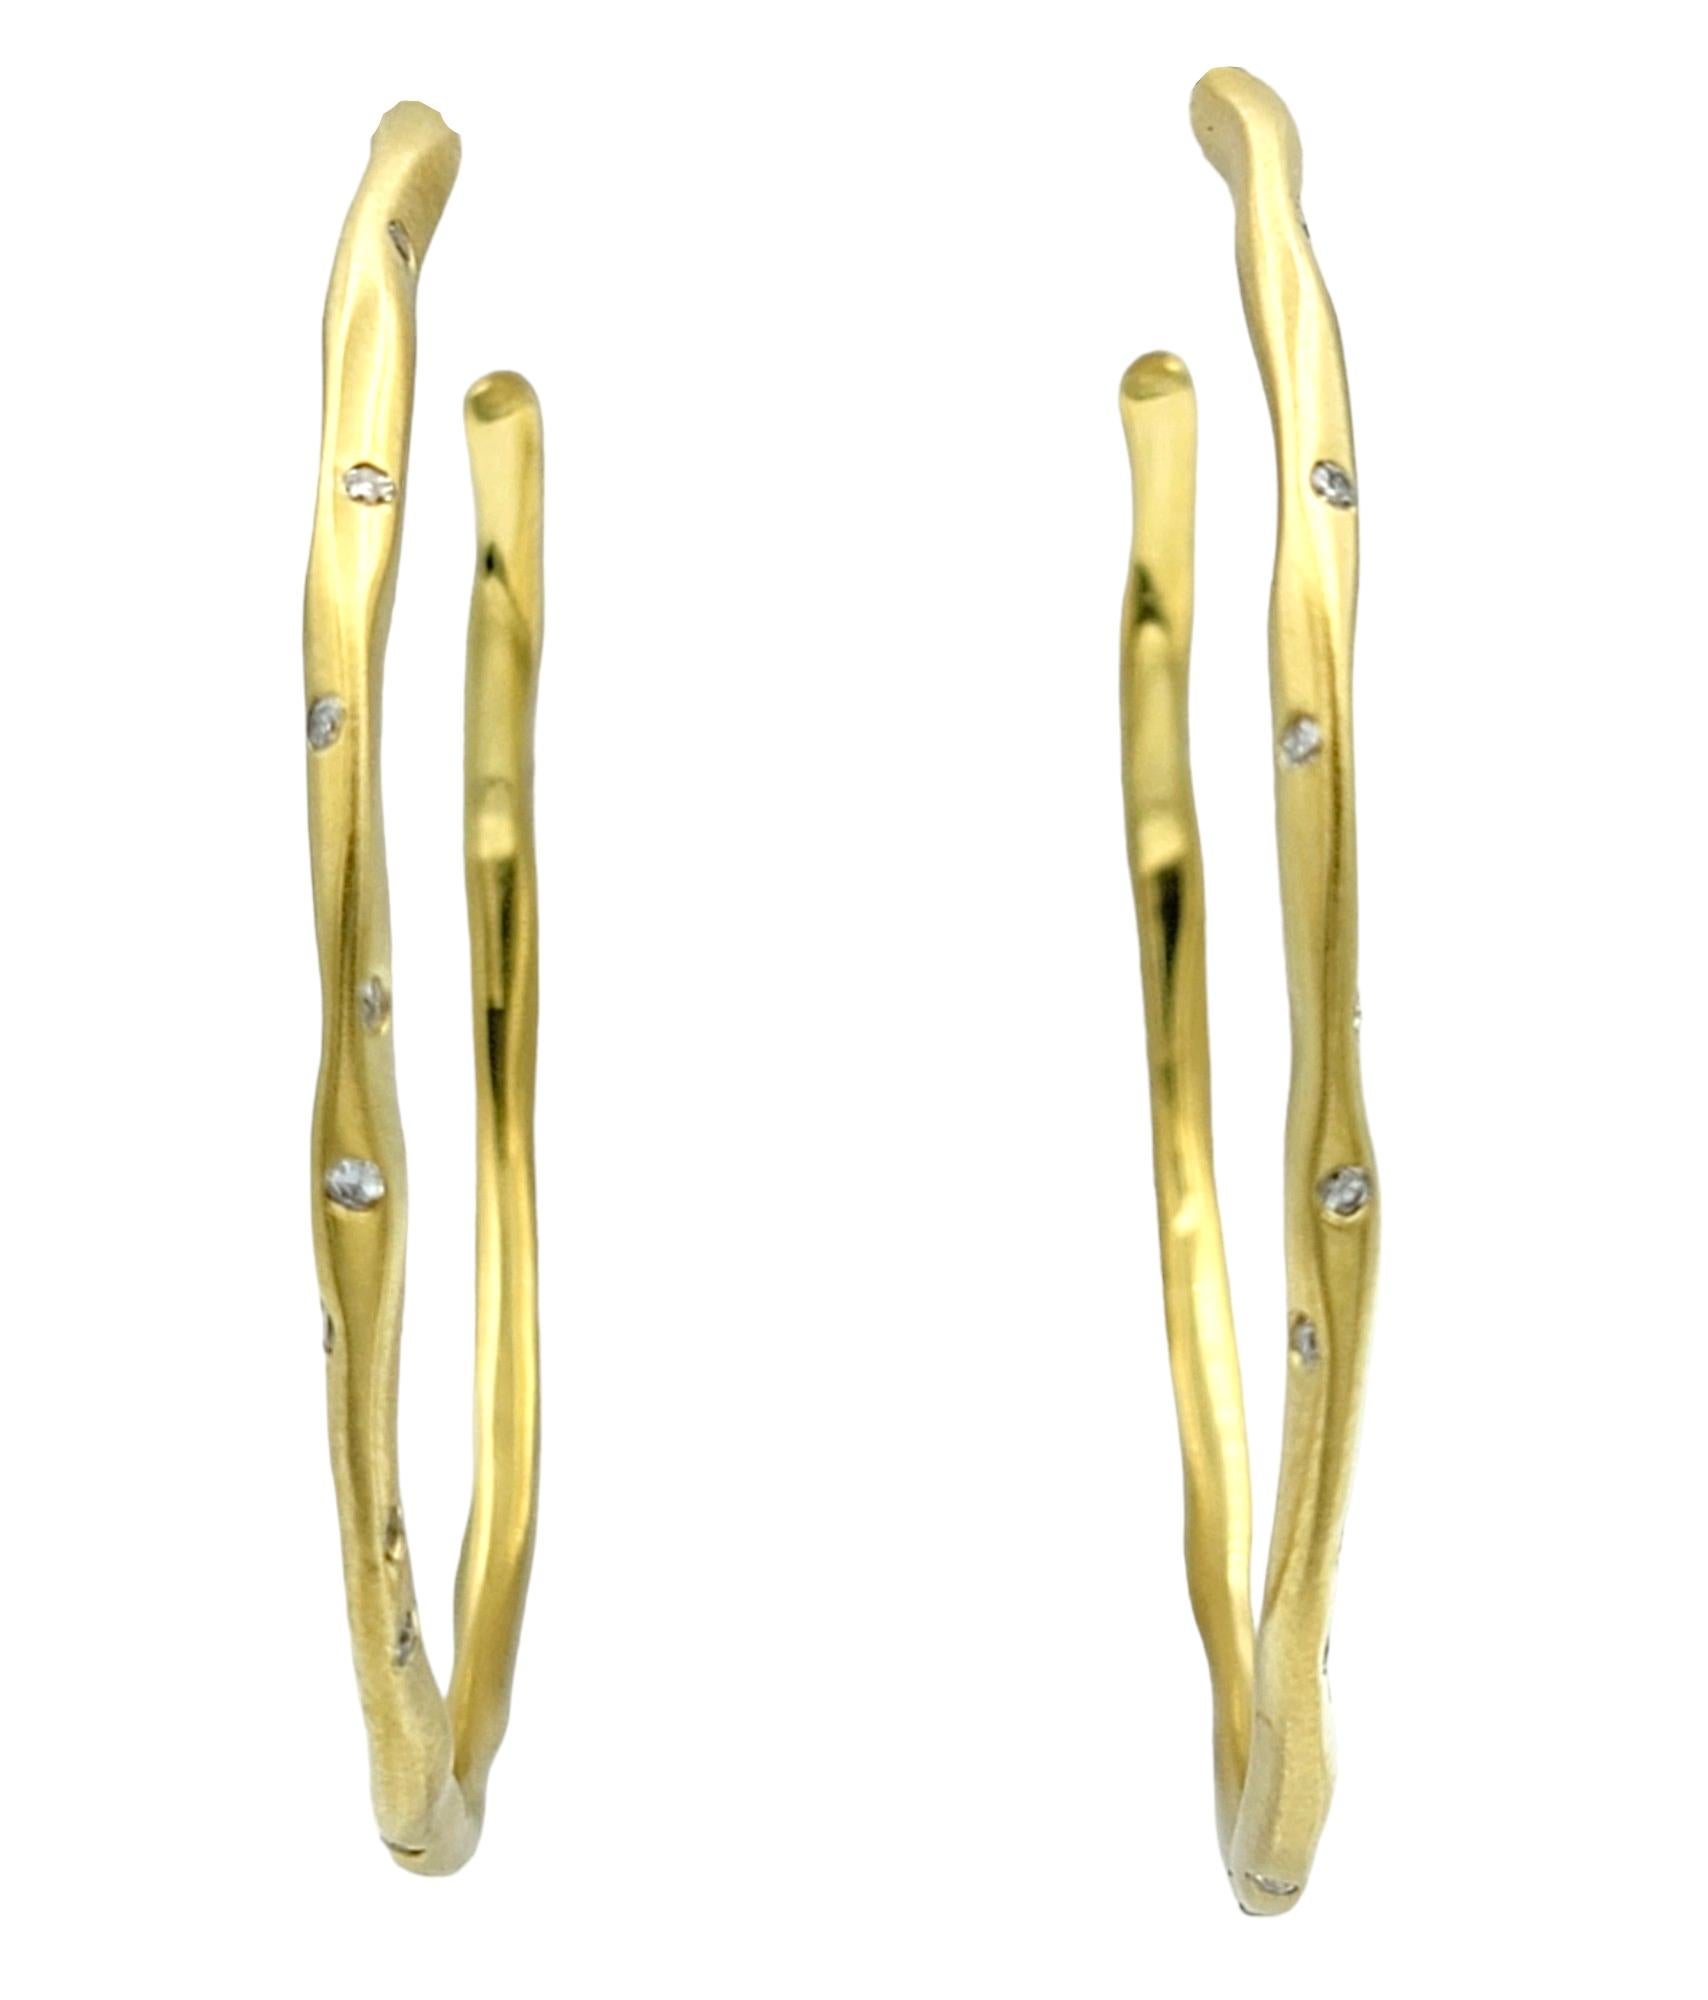 Diese schillernden Diamantohrringe, gefasst in luxuriösem 18-karätigem Gelbgold, strahlen eine moderne und raffinierte Eleganz aus. Die großen Reifen sind gebürstet und mit einem gehämmerten Design versehen, was dem Paar ein modernes und